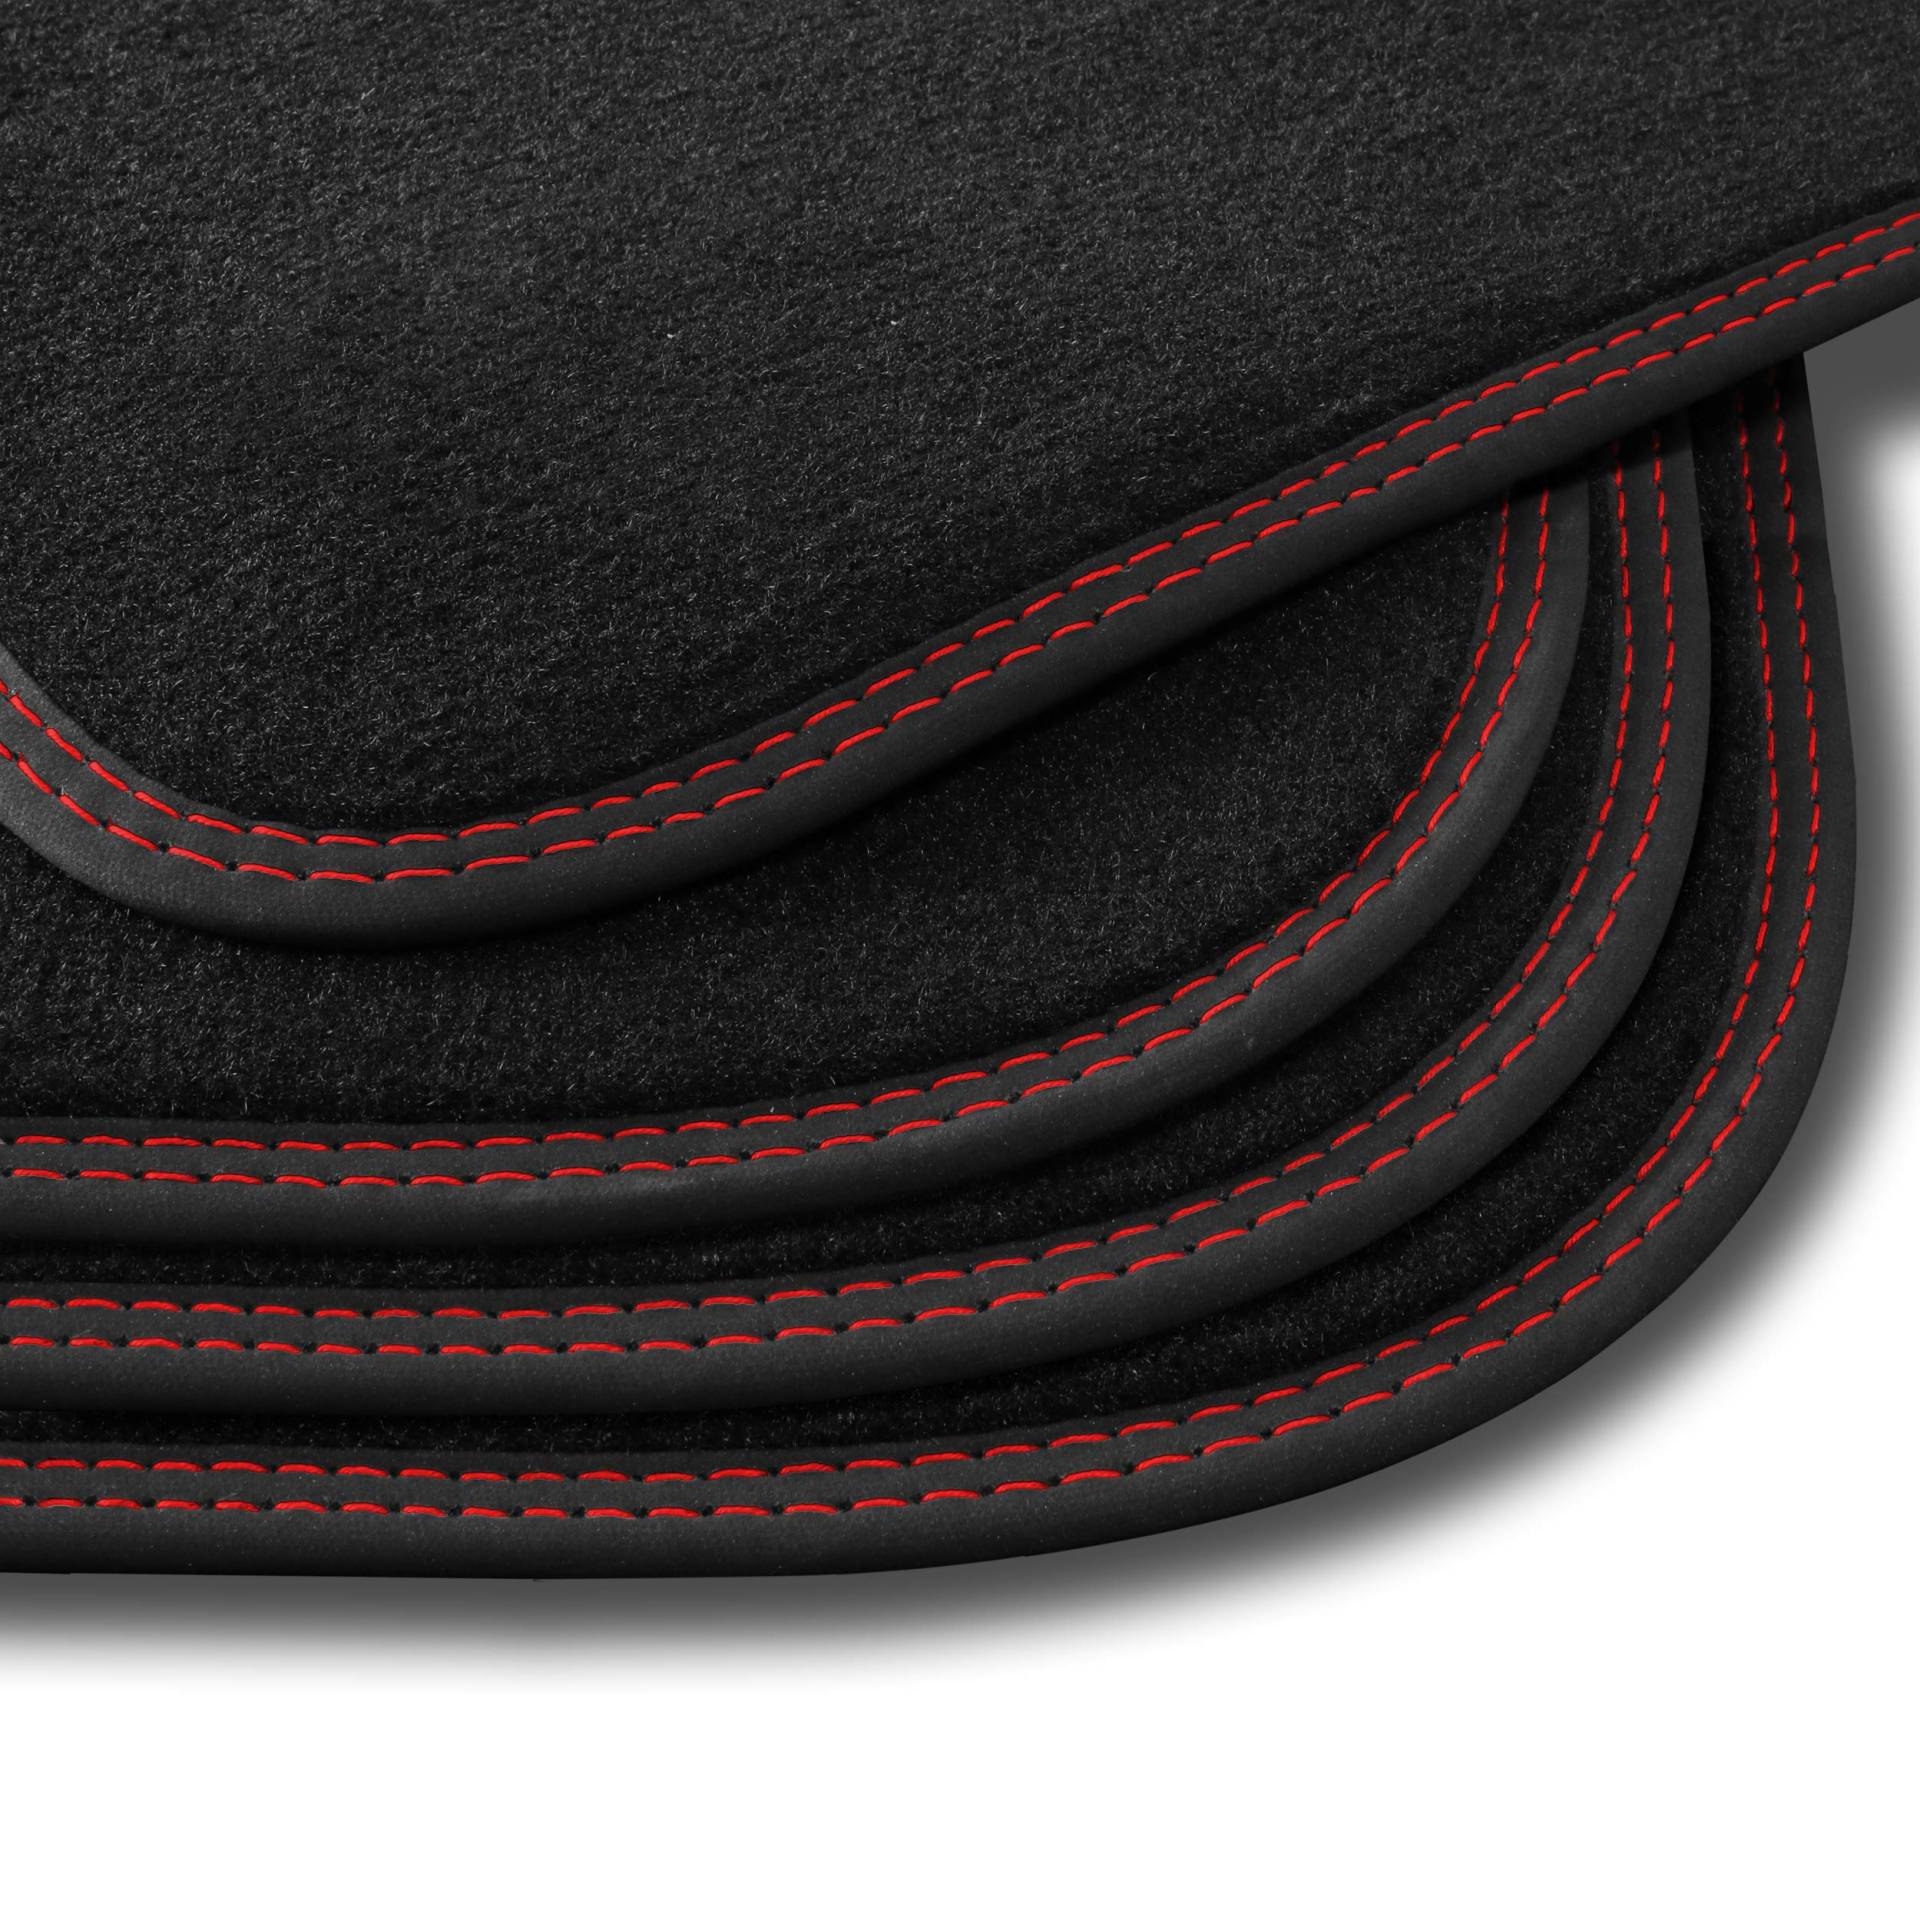 Bär-AfC SE05477 Premium Auto-Fußmatten Velours Schwarz, Nubuk Band Schwarz, Doppelnaht Rot + Rot, Set 4-teilig, Passgenau für Modell Siehe Details von Bär-AfC